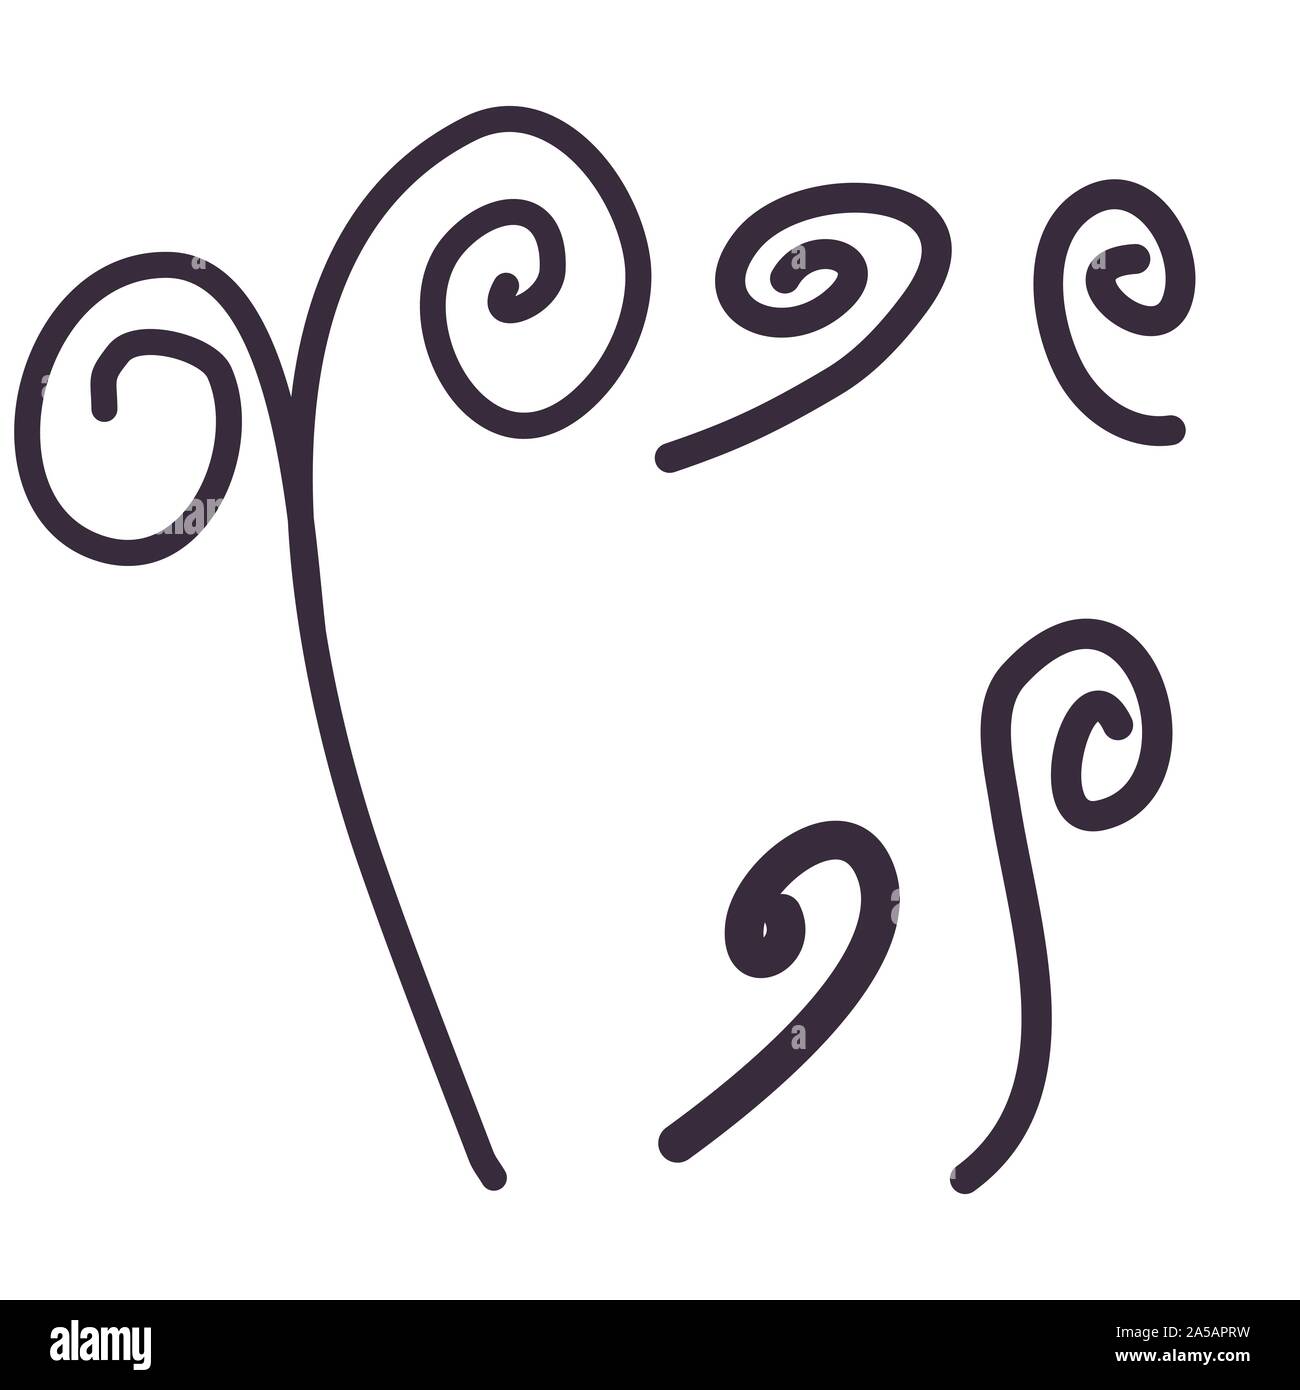 Lato linea tracciata doodle curl impostato in stile vintage. Nero vector graphic design elemento. Illustrazione Vettoriale